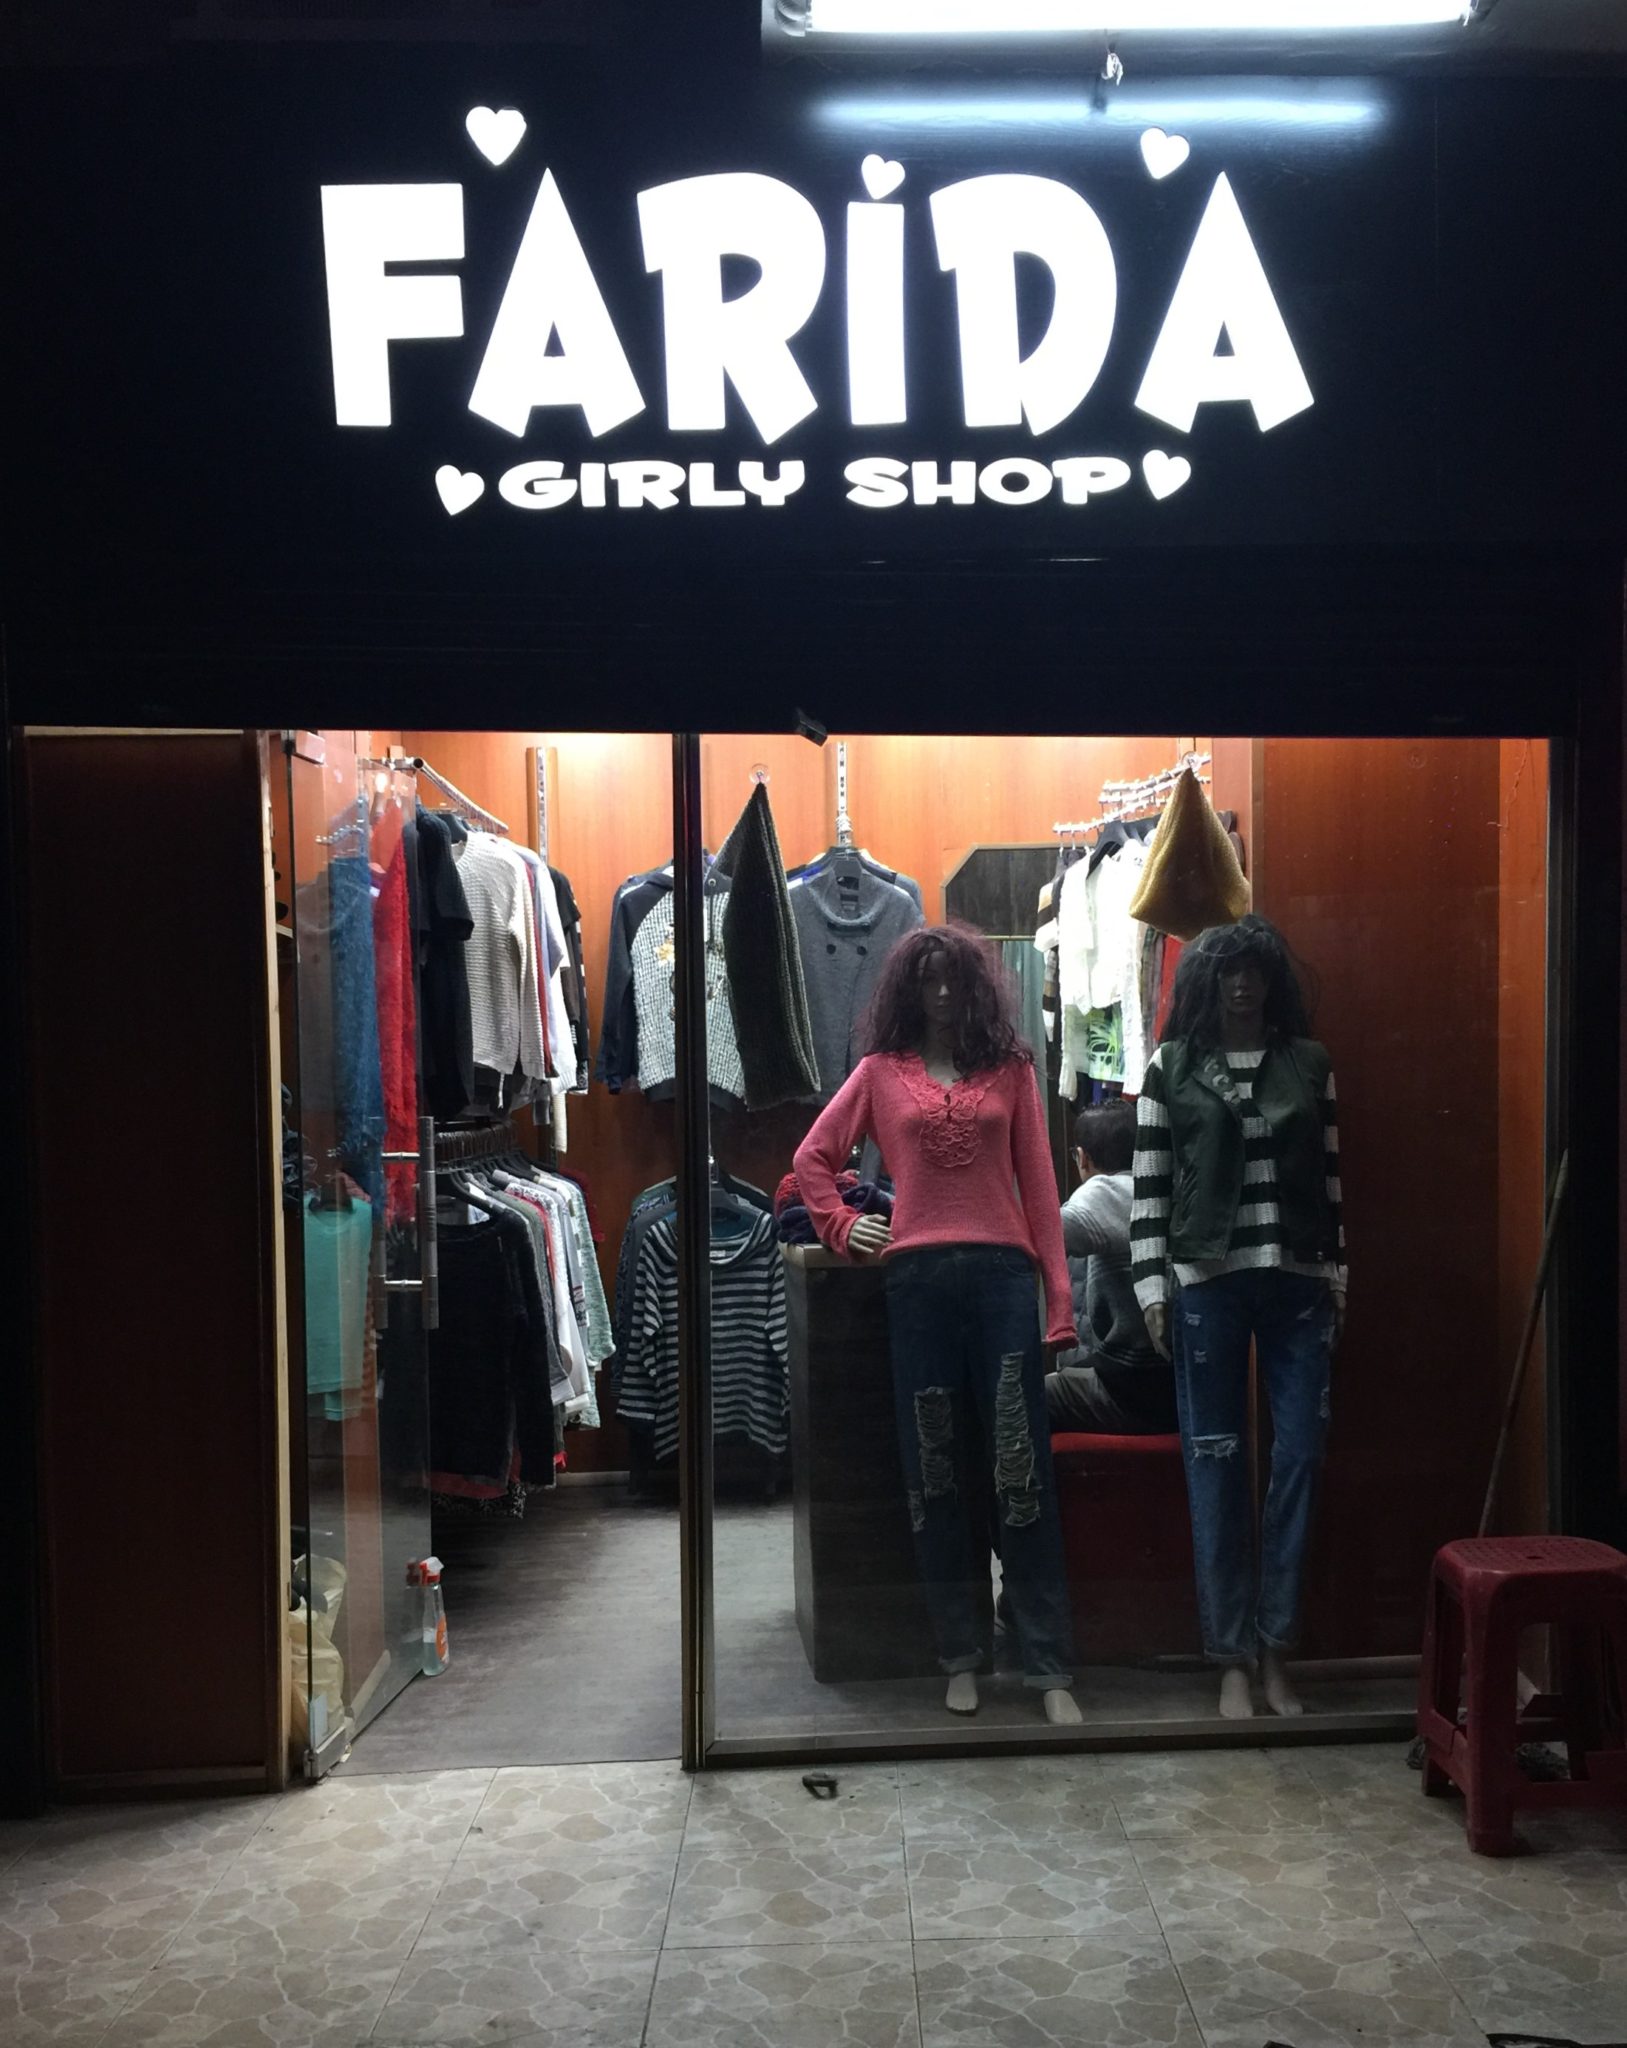 Farida Girly Shop